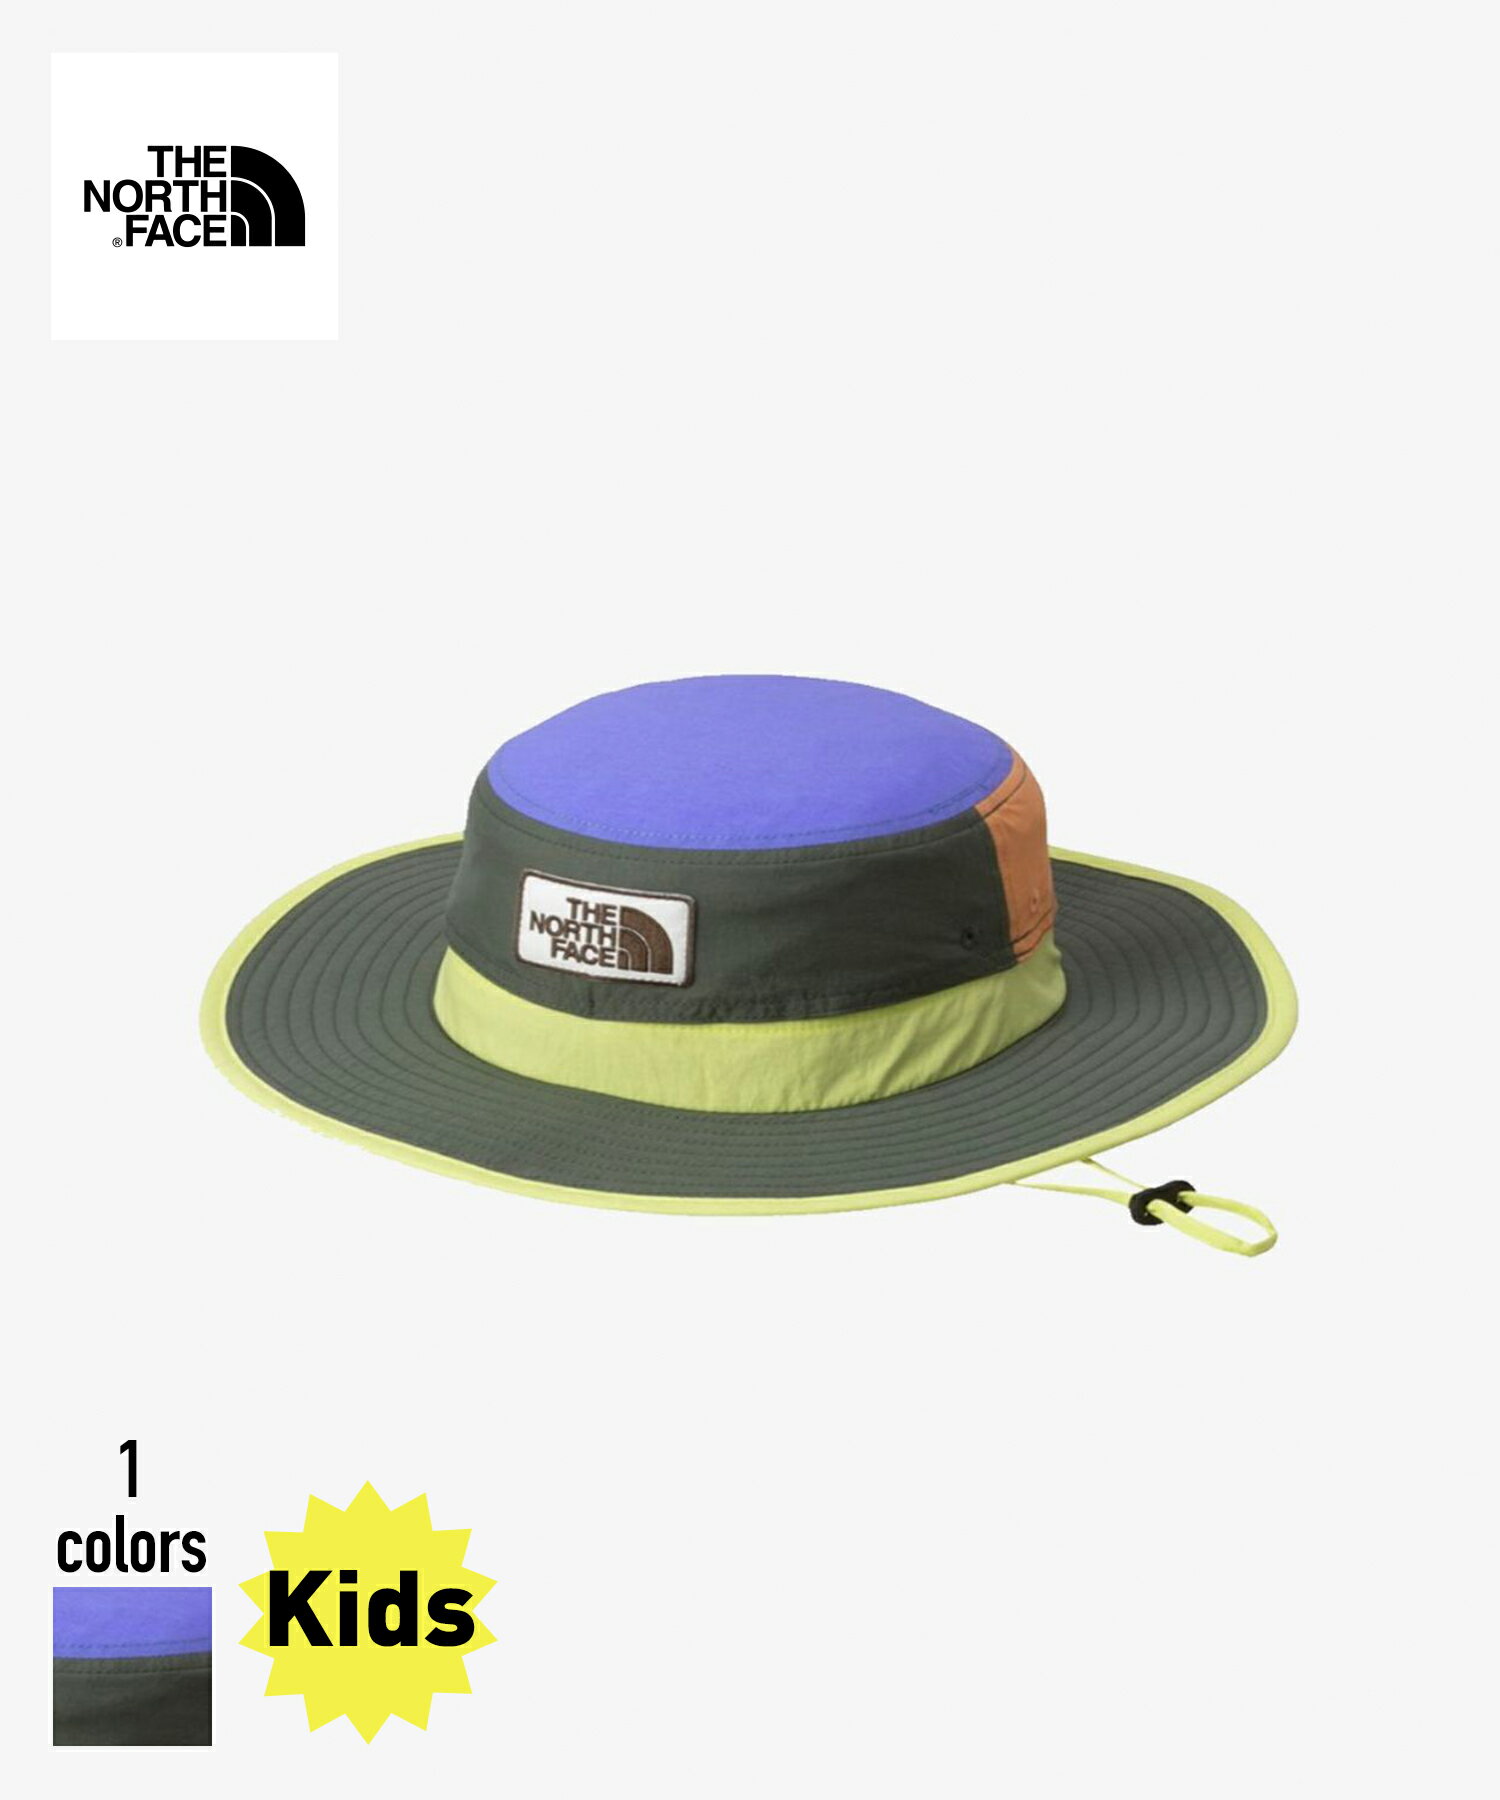 THE NORTH FACE Kids Grand Horizon Hat(NNJ02309)【ノースフェイス キッズ グランドホライズンハット】 国内正規品 子ども用 ハット ヘッドウェア 帽子 アウトドア バーベキュー サンシールド 紫外線対策 日よけ UVケア 通気性 S/M/L マルチカラー 24SP